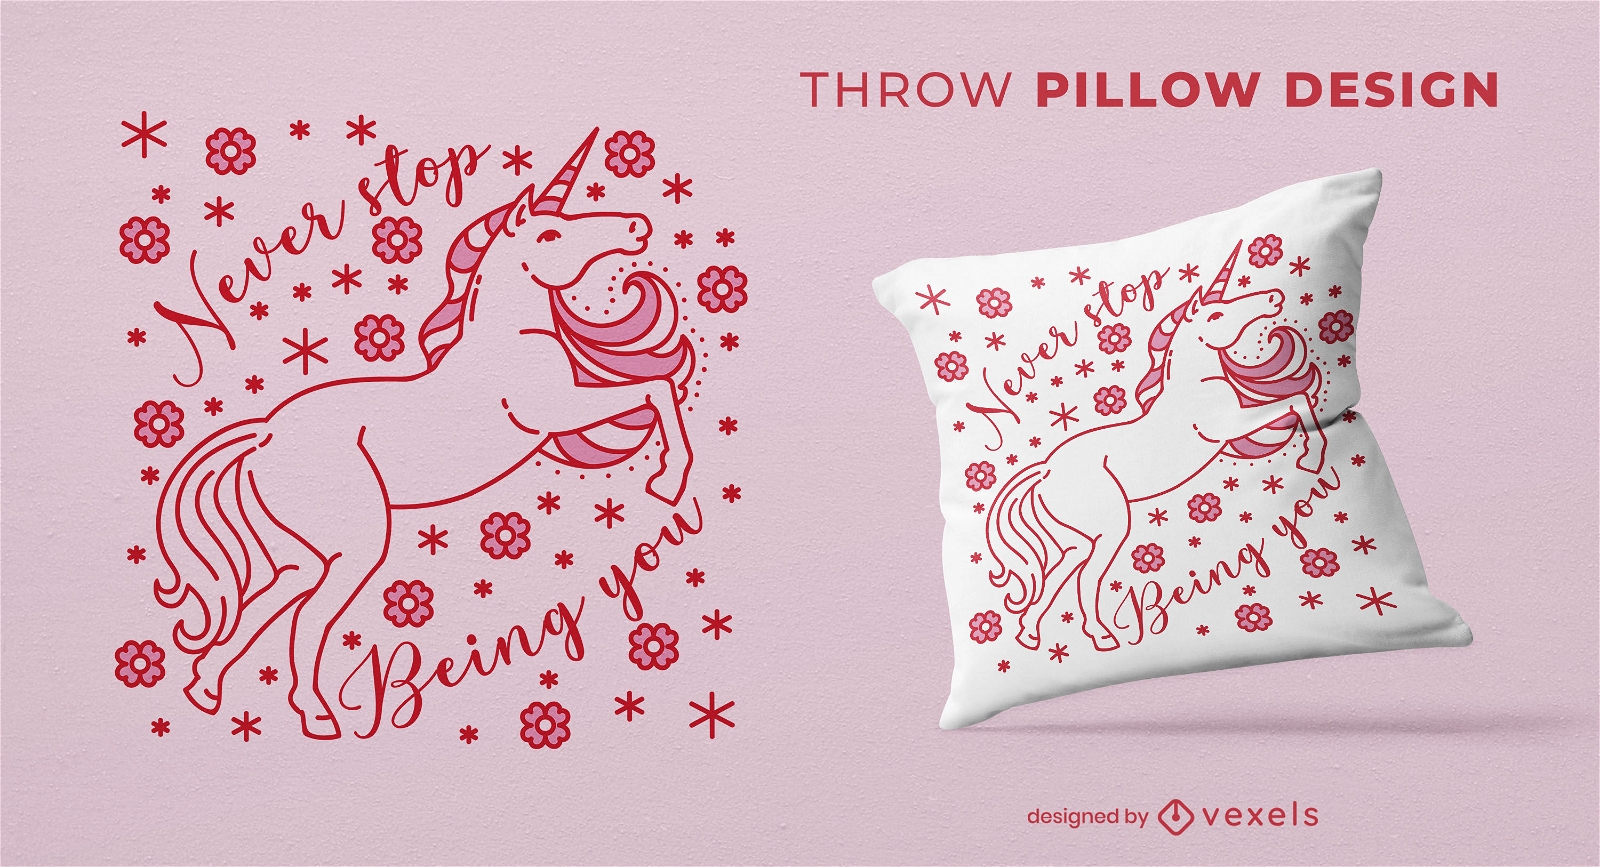 Diseño de almohada de tiro de motivación de unicornio floral